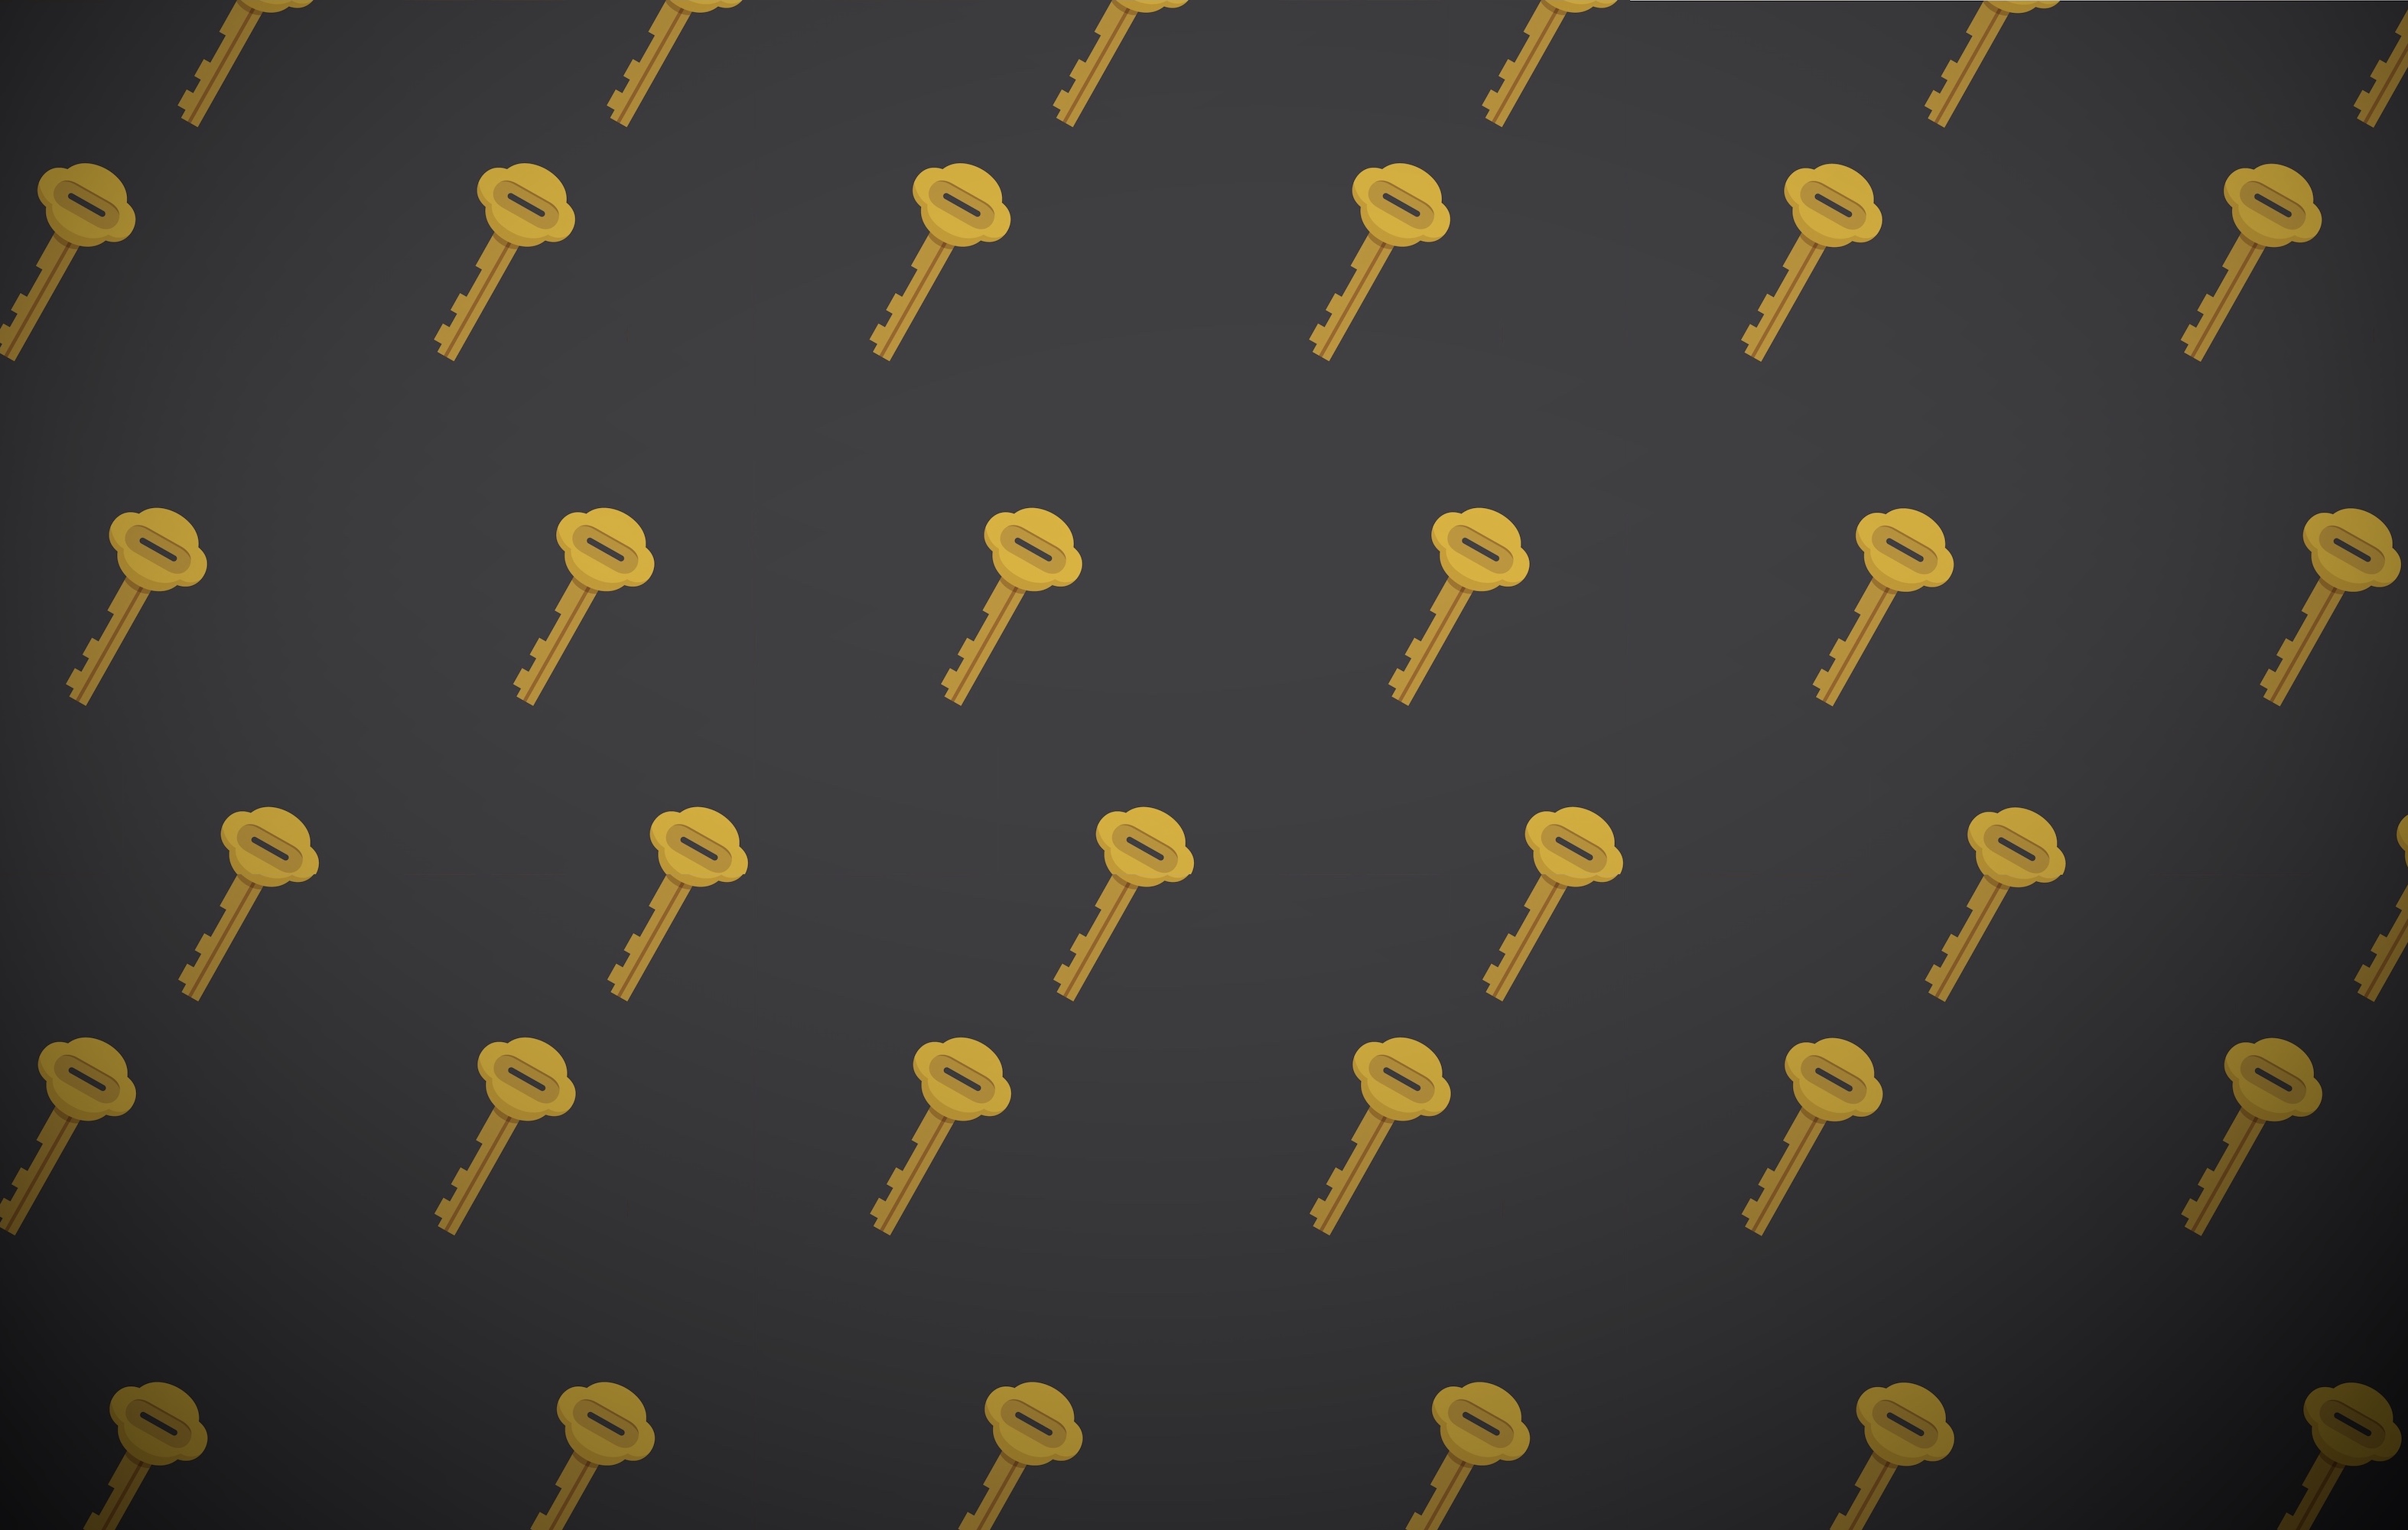 Keys on a patterned dark background